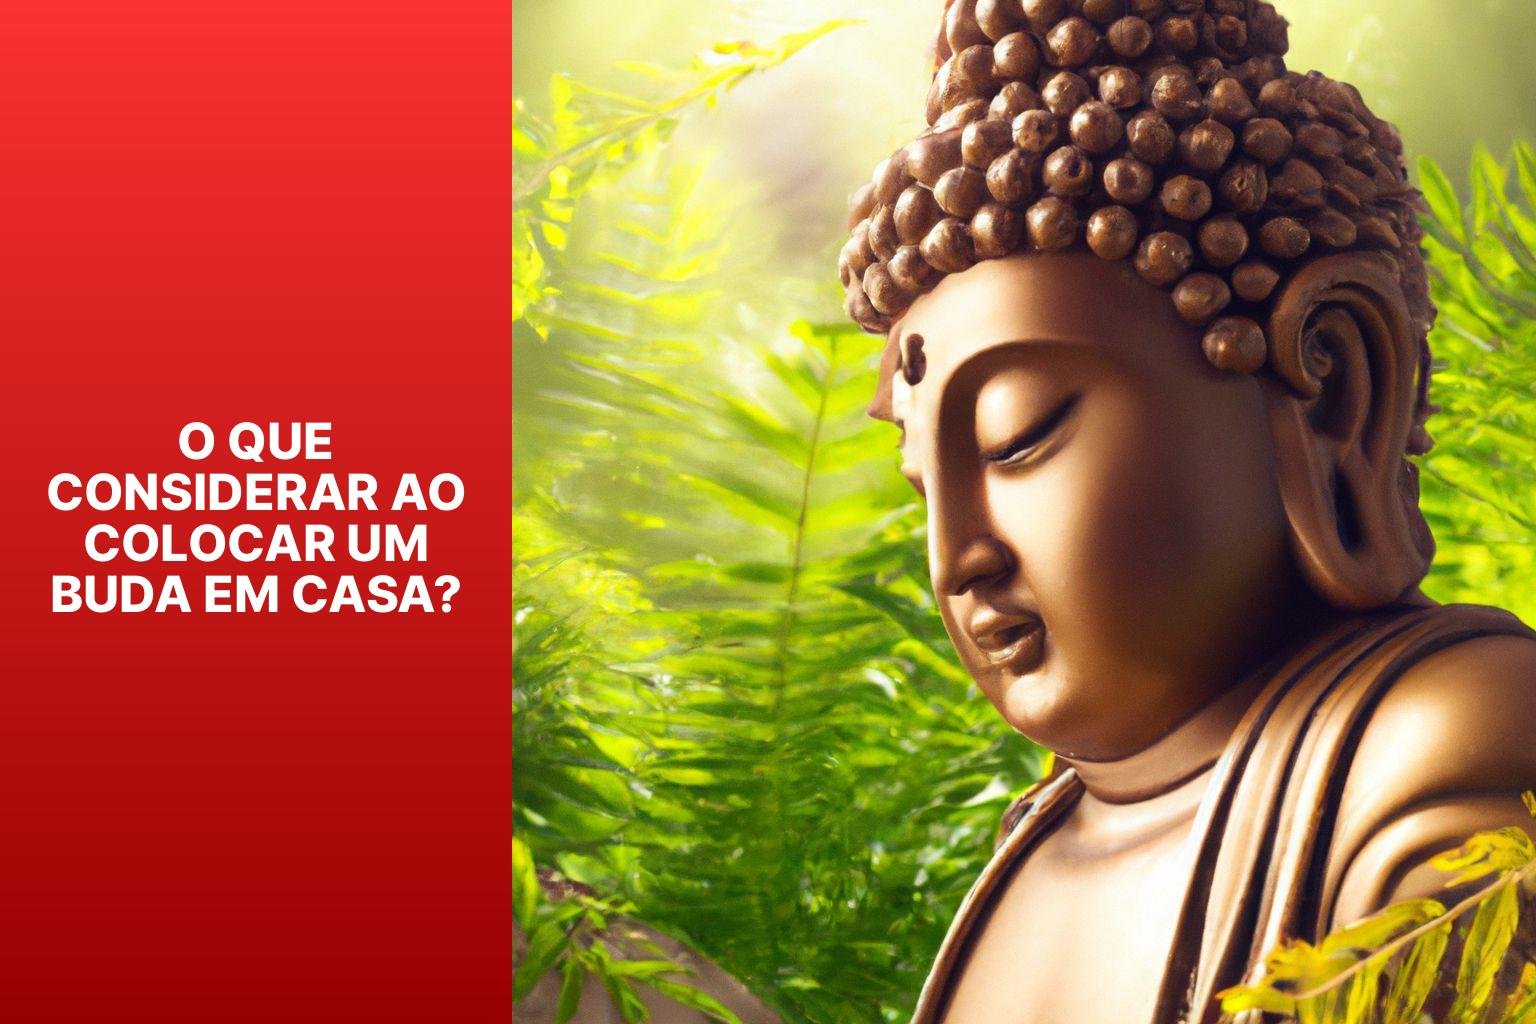 O Que Considerar ao Colocar um Buda em Casa? - Onde Se Deve Colocar Um Buda? 